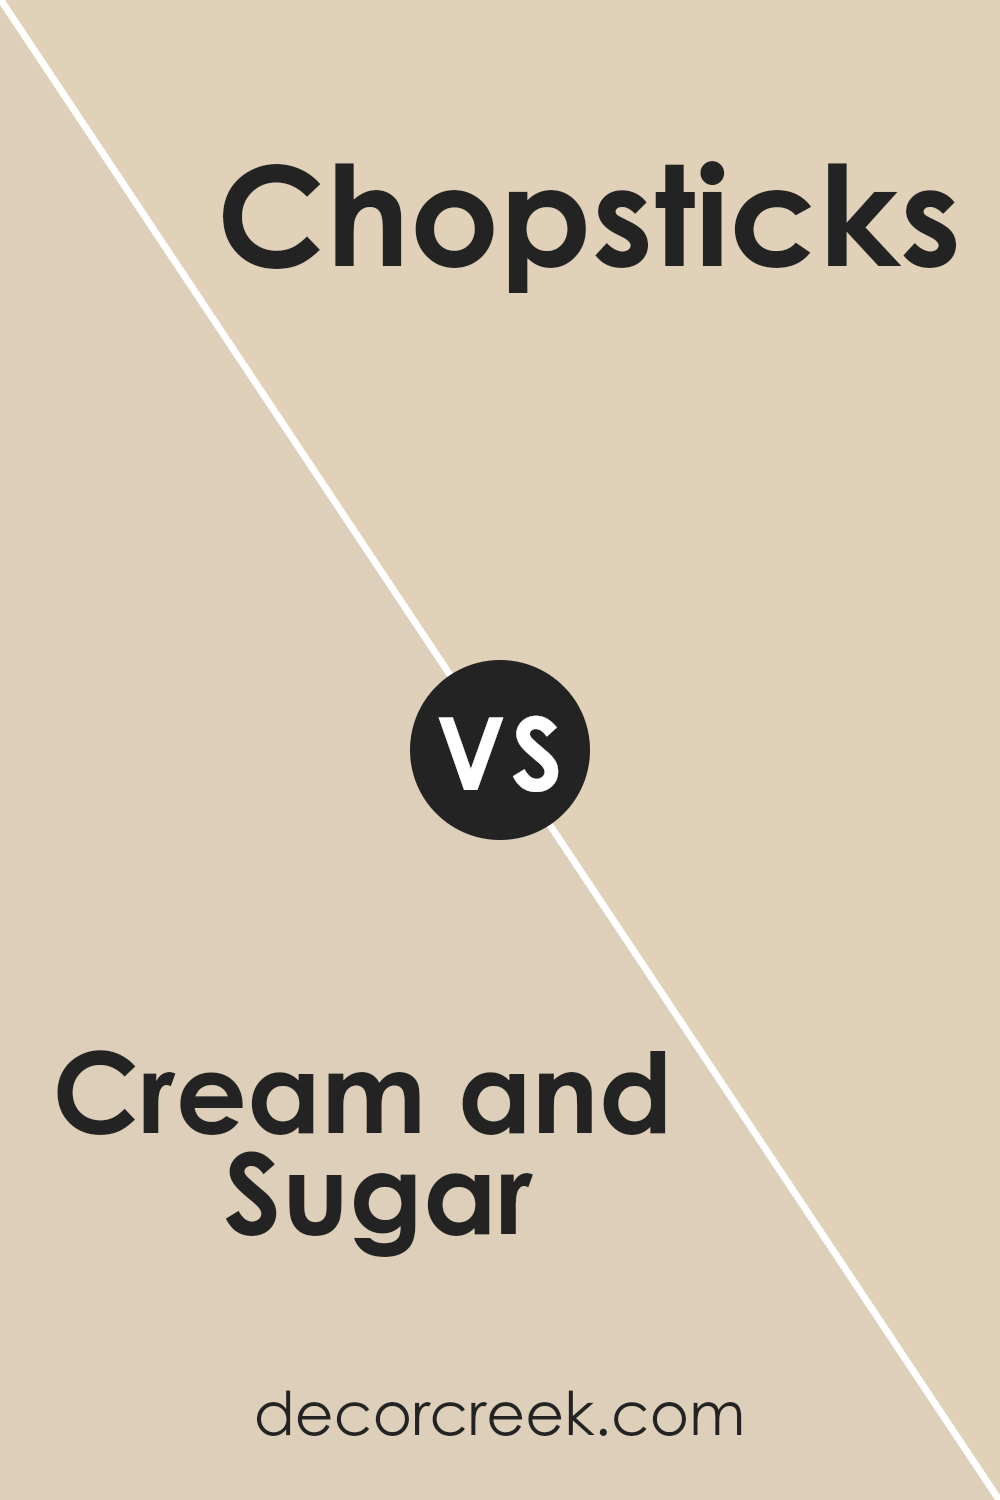 cream_and_sugar_sw_9507_vs_chopsticks_sw_7575